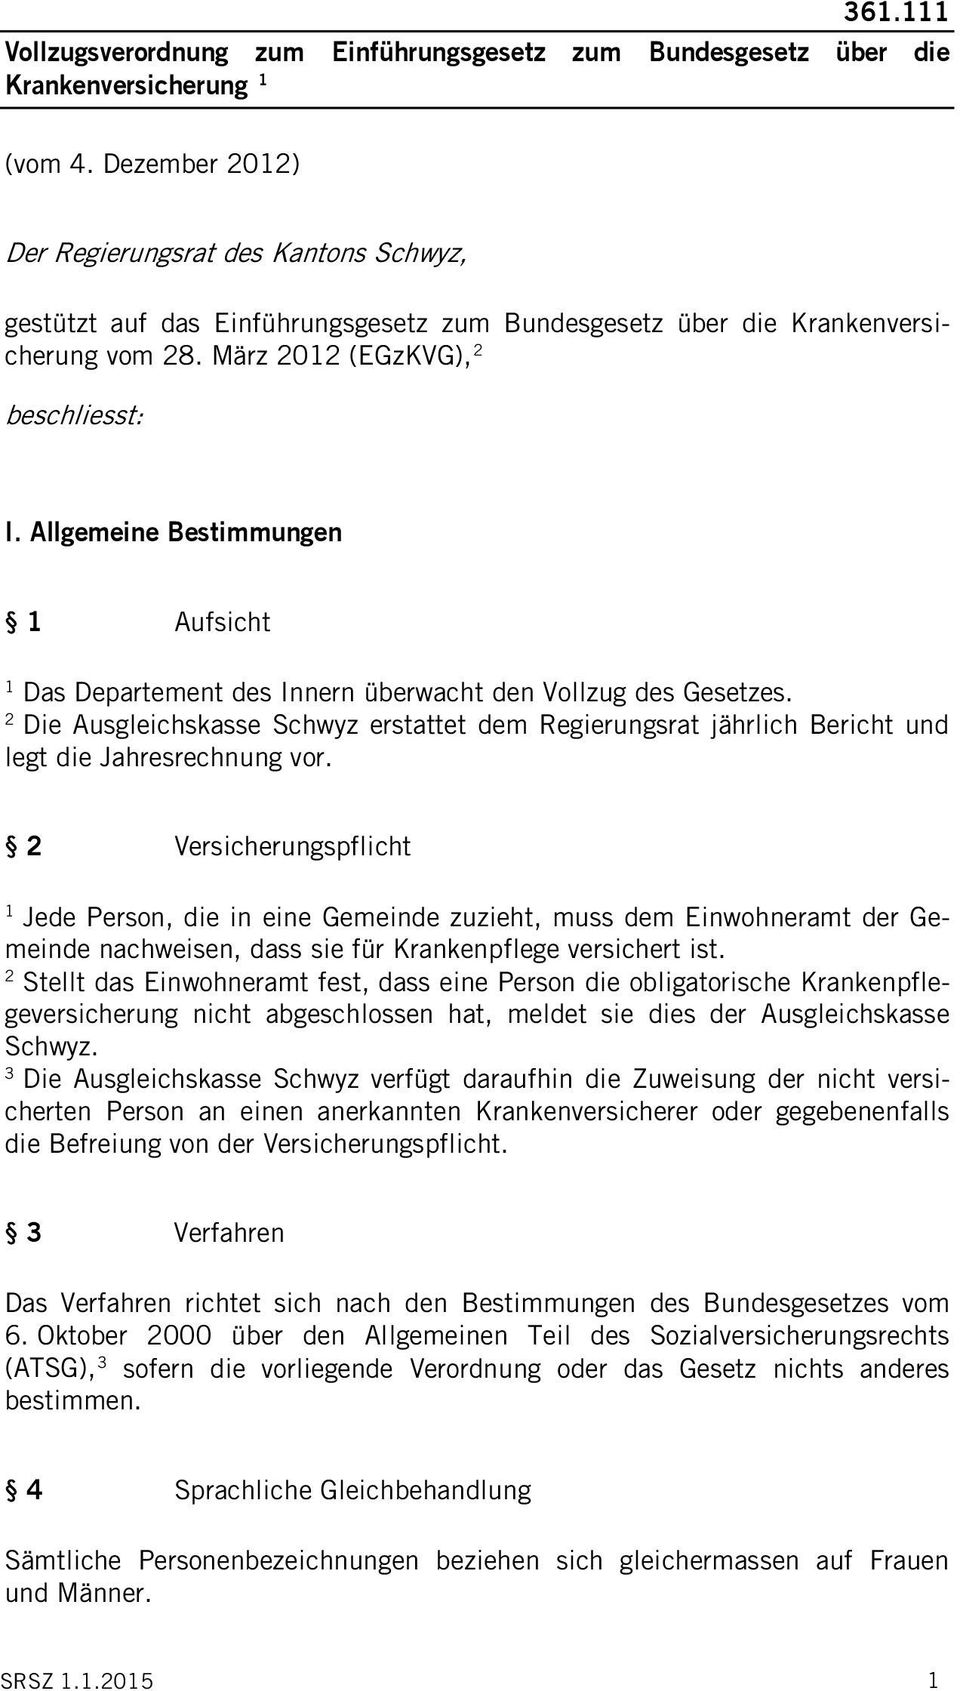 Allgemeine Bestimmungen Aufsicht Das Departement des Innern überwacht den Vollzug des Gesetzes. Die Ausgleichskasse Schwyz erstattet dem Regierungsrat jährlich Bericht und legt die Jahresrechnung vor.